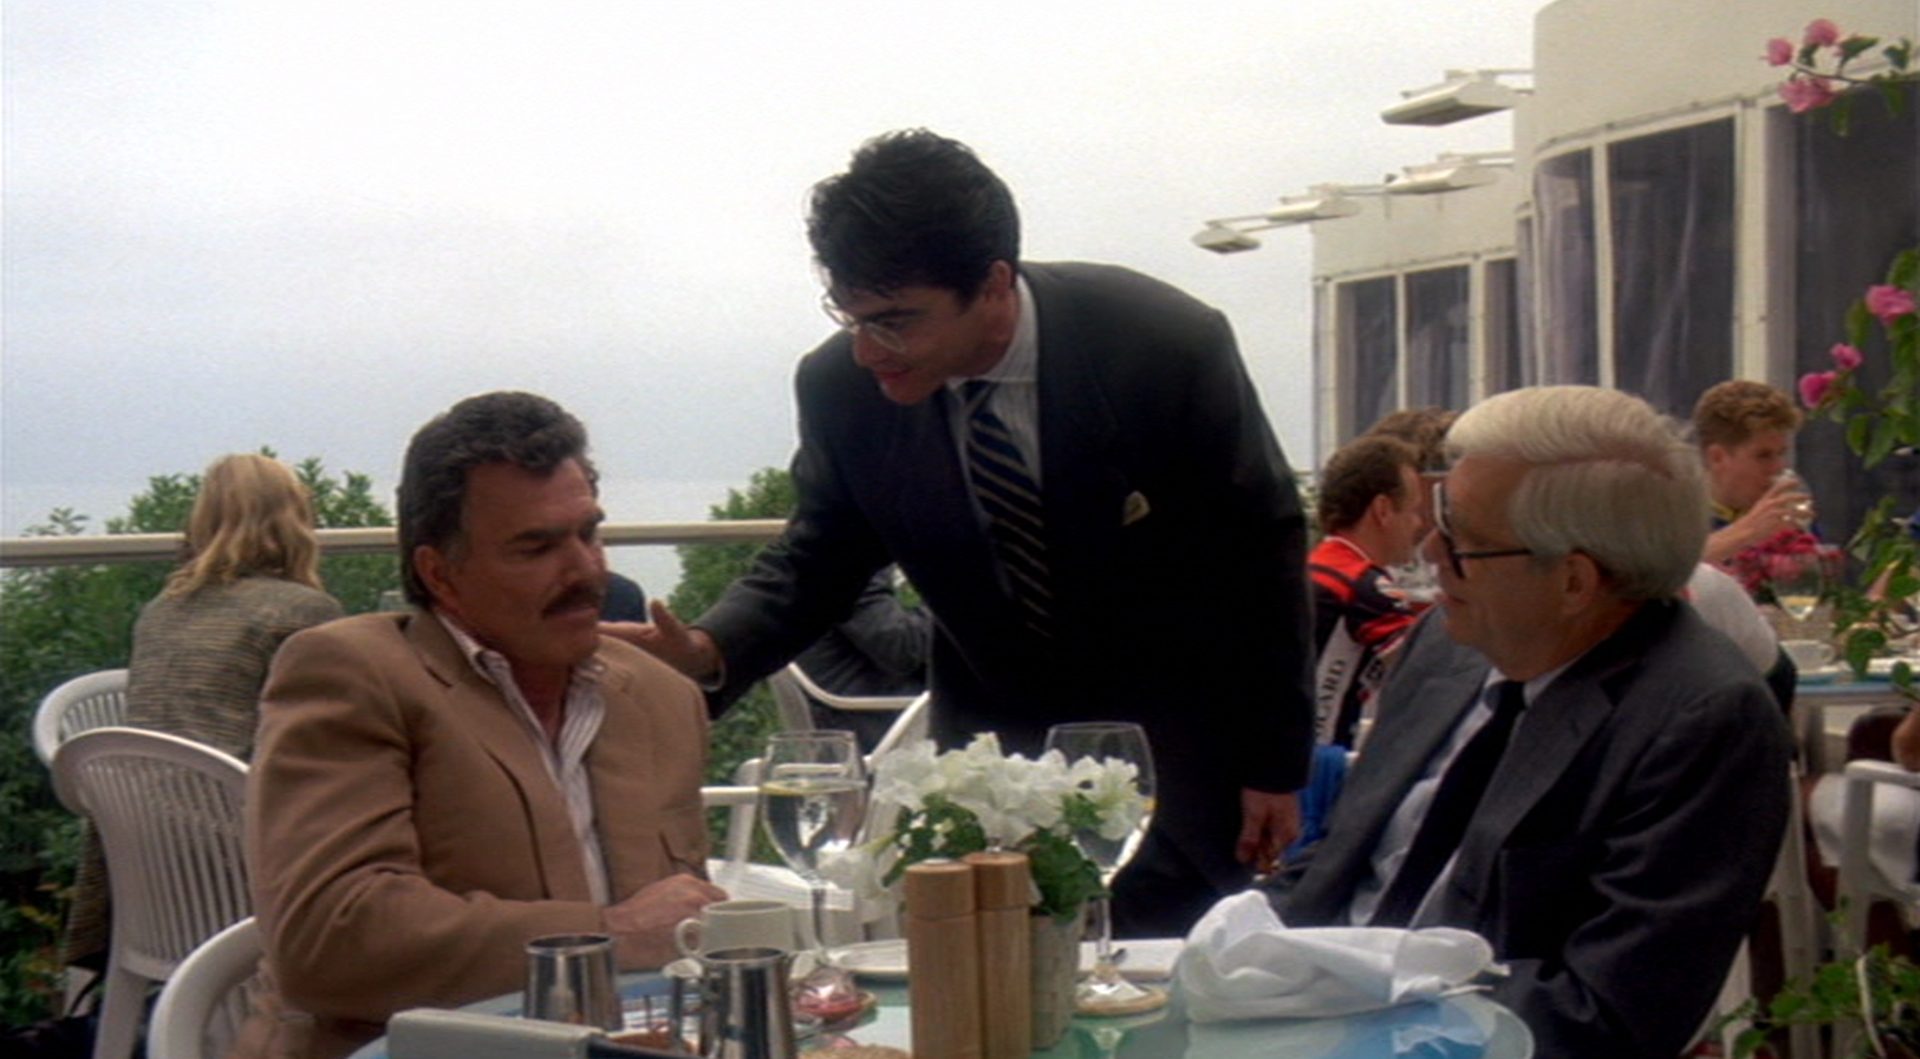 Studioproduzent Larry Levy (Peter Gallagher) begrüßt auf der Terrasse eines Edelrestaurant Burt Reynolds, der sich an einem Tisch unterhält.